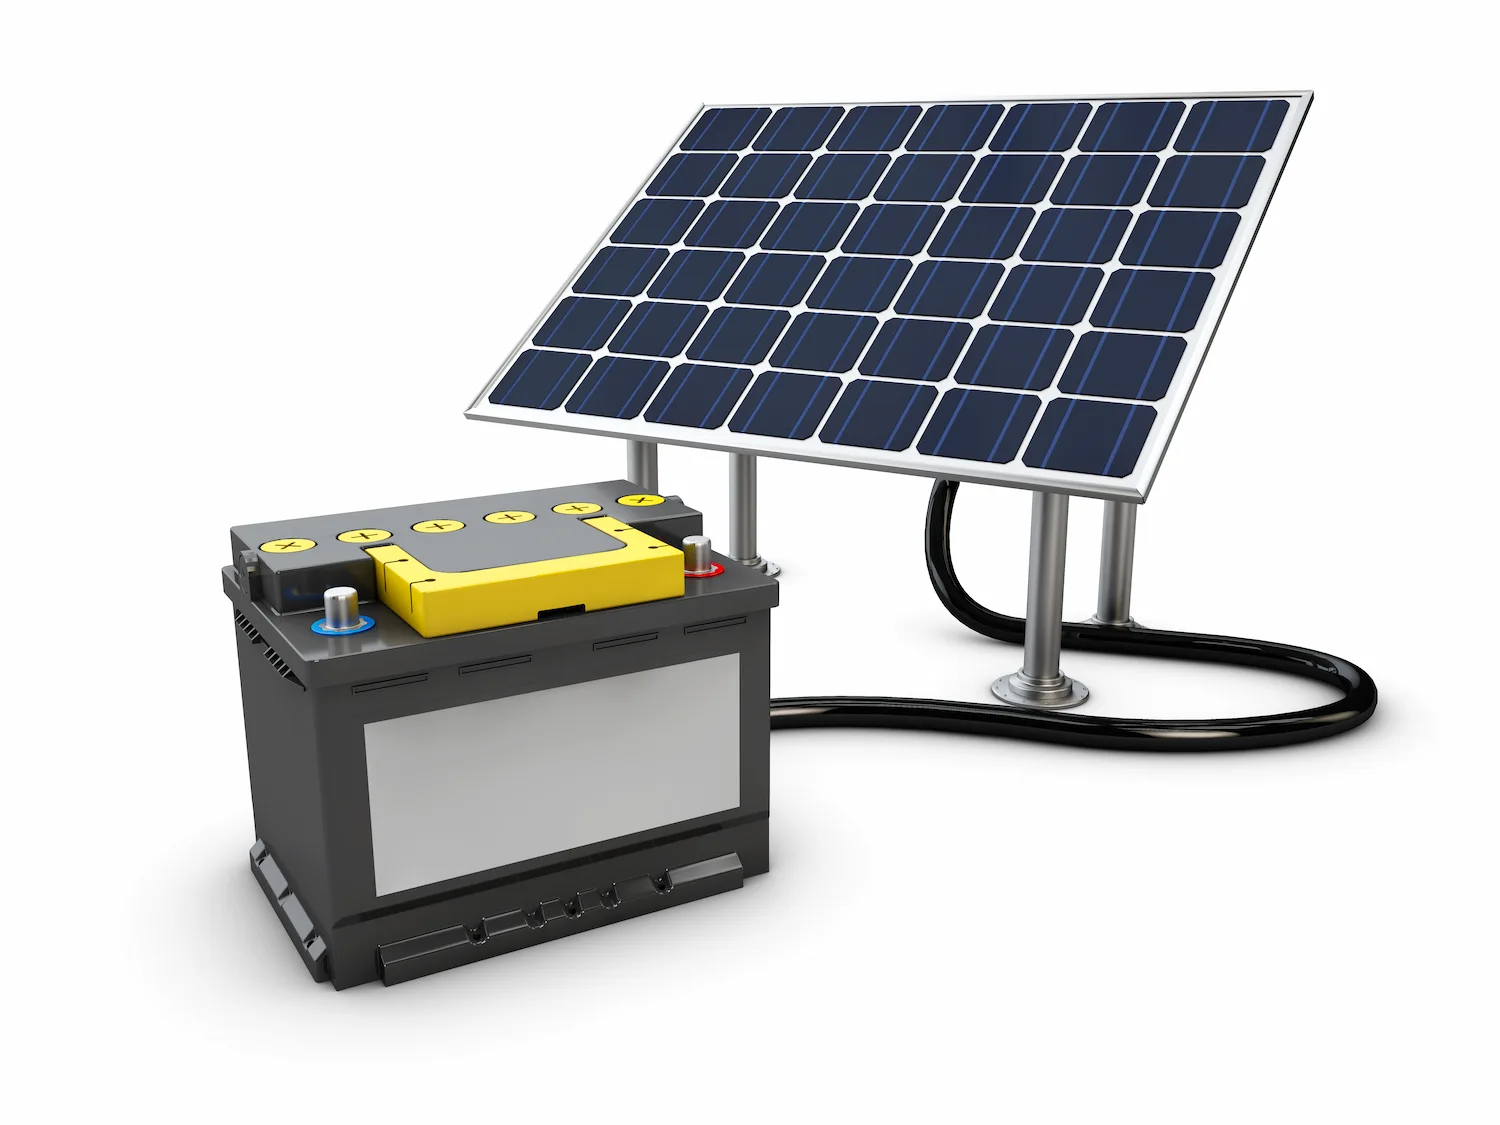 Placas solares con o sin baterias? ¿Cuál es la mejor opción?